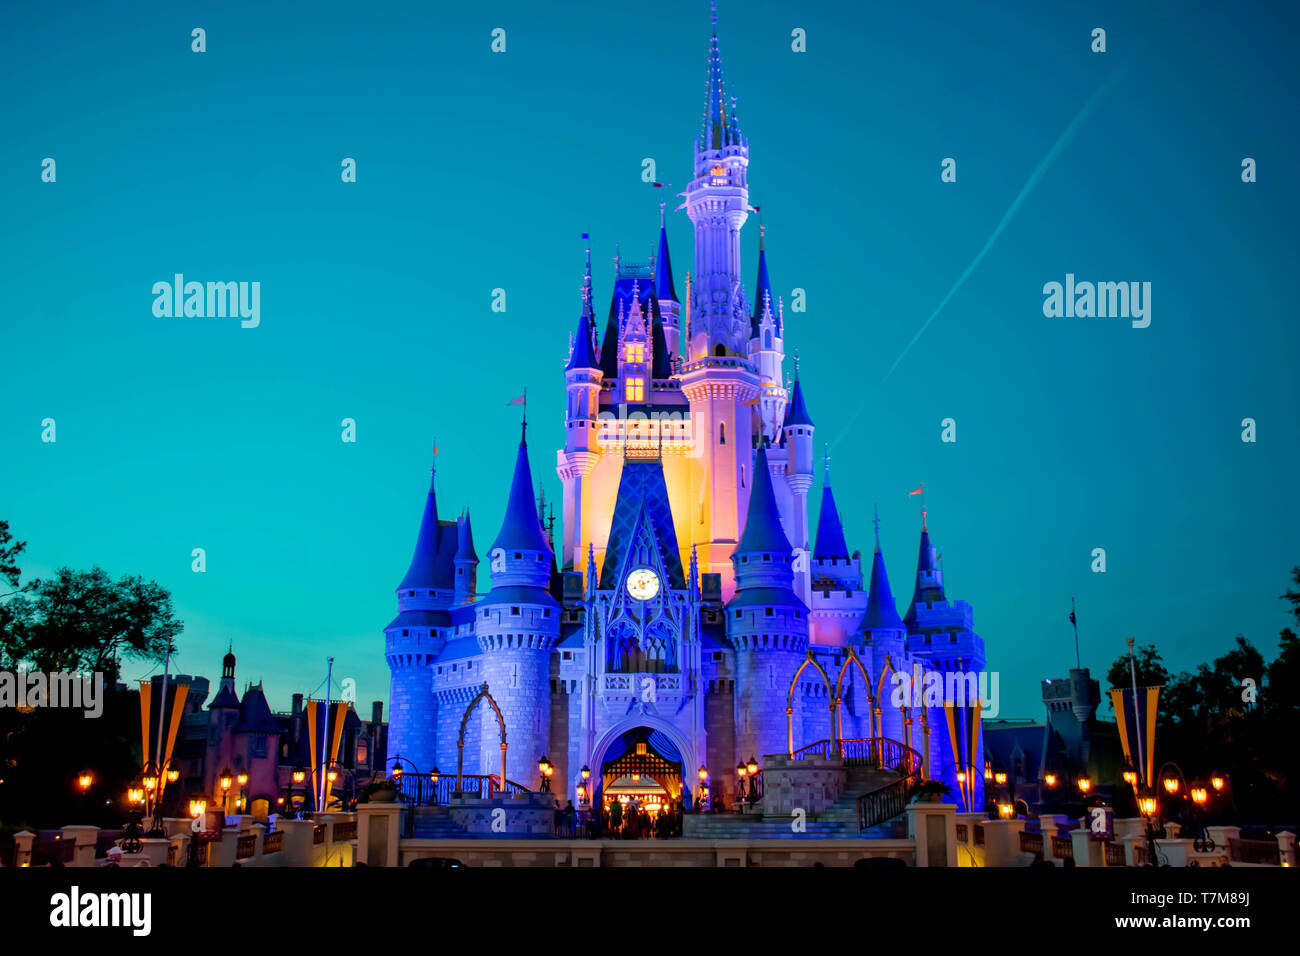 Orlando, Florida, Ánh sáng đèn Walt Disney World: Hãy cùng chiêm ngưỡng vẻ đẹp tuyệt vời của Orlando, Florida với ánh sáng đèn lấp lánh khi màn đêm buông xuống cùng với khung cảnh đầy màu sắc của Walt Disney World. Một bộ ảnh sẽ giúp bạn lưu lại những kỉ niệm đáng nhớ tại đây.